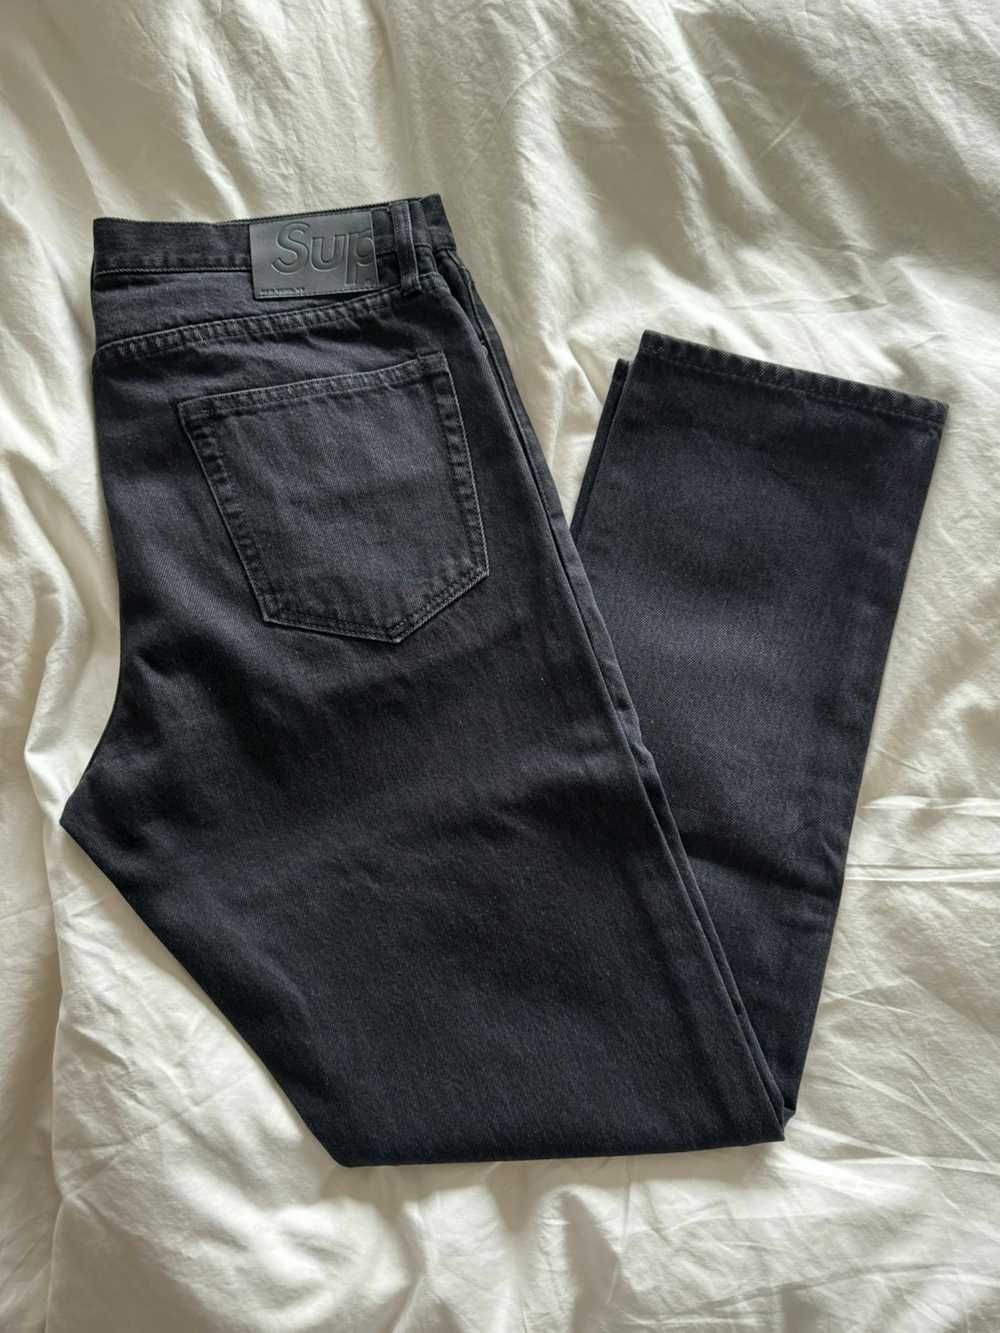 Supreme Supreme Washed Black Jeans - image 1